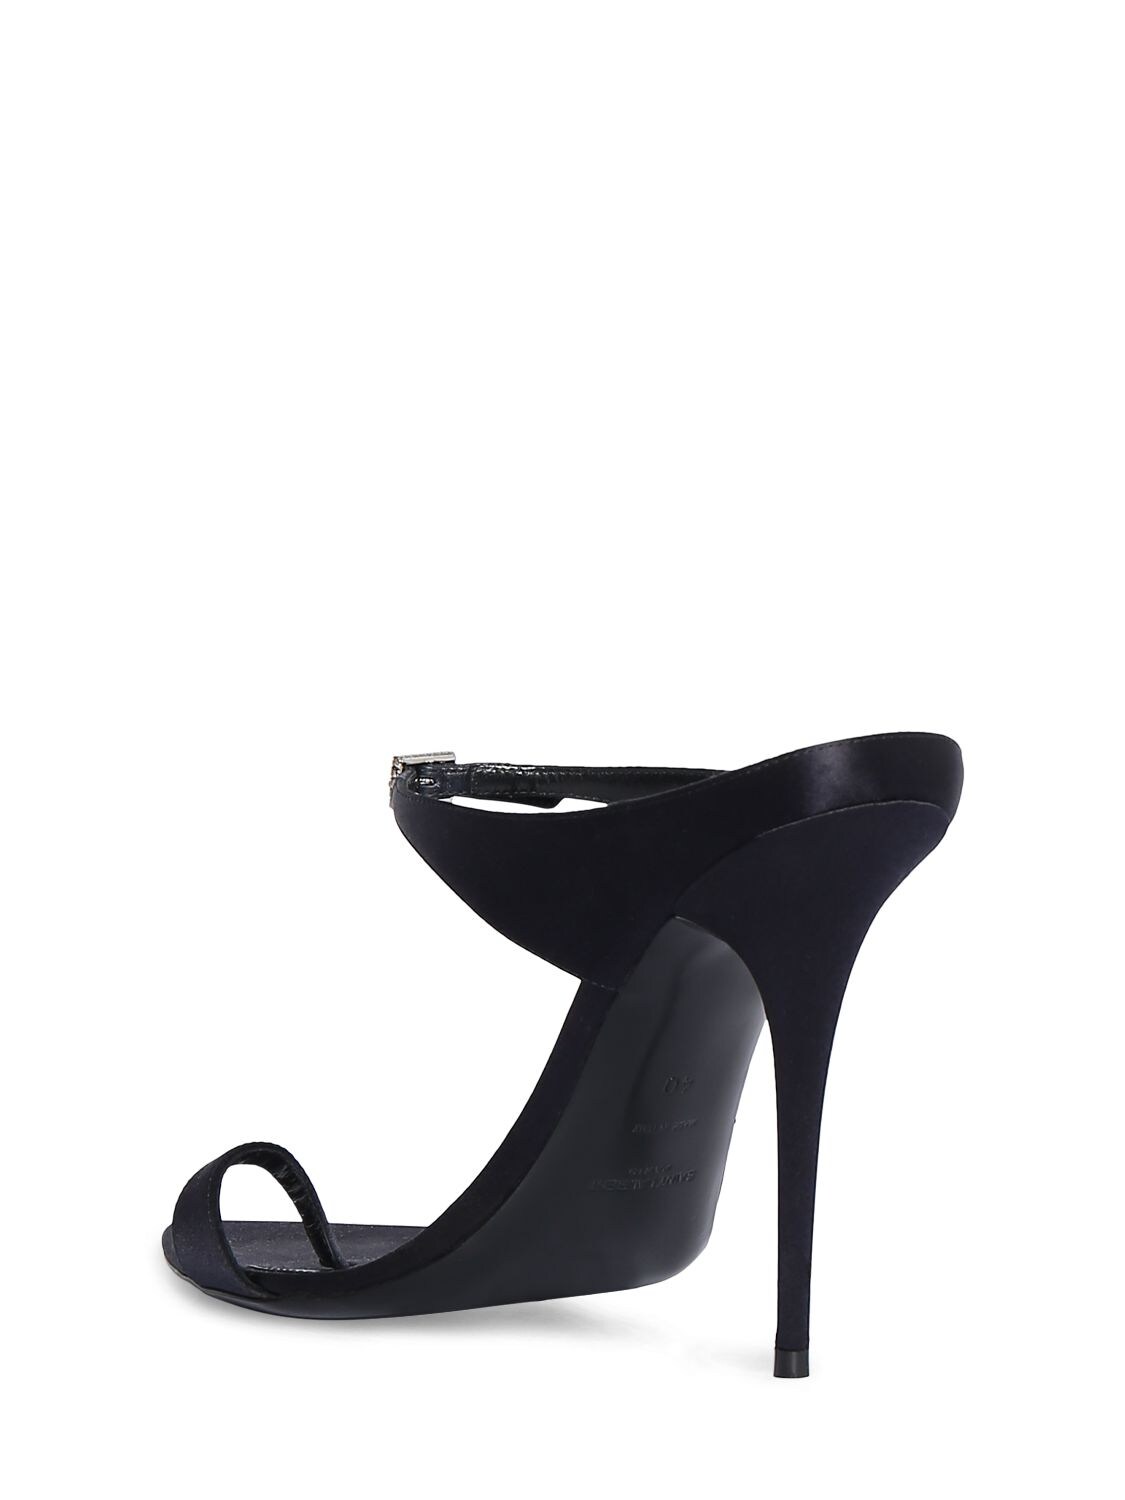 Shop Saint Laurent 110mm Dive Satin Mule Sandals In Black